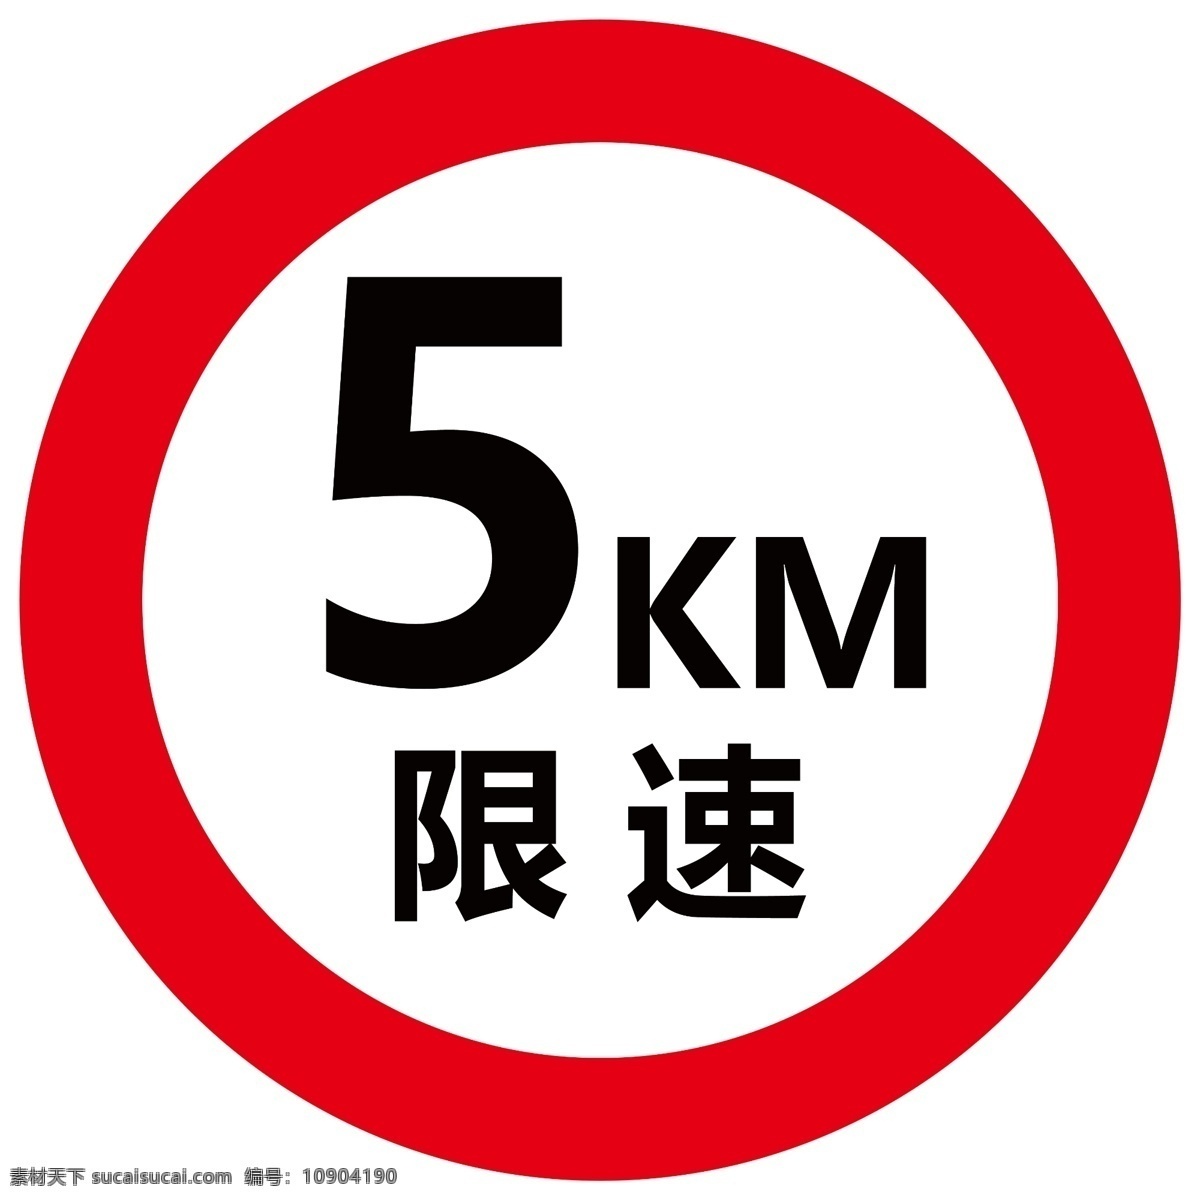 限速牌图片 限速 交通 工地 施工警示 红色 标志图标 公共标识标志